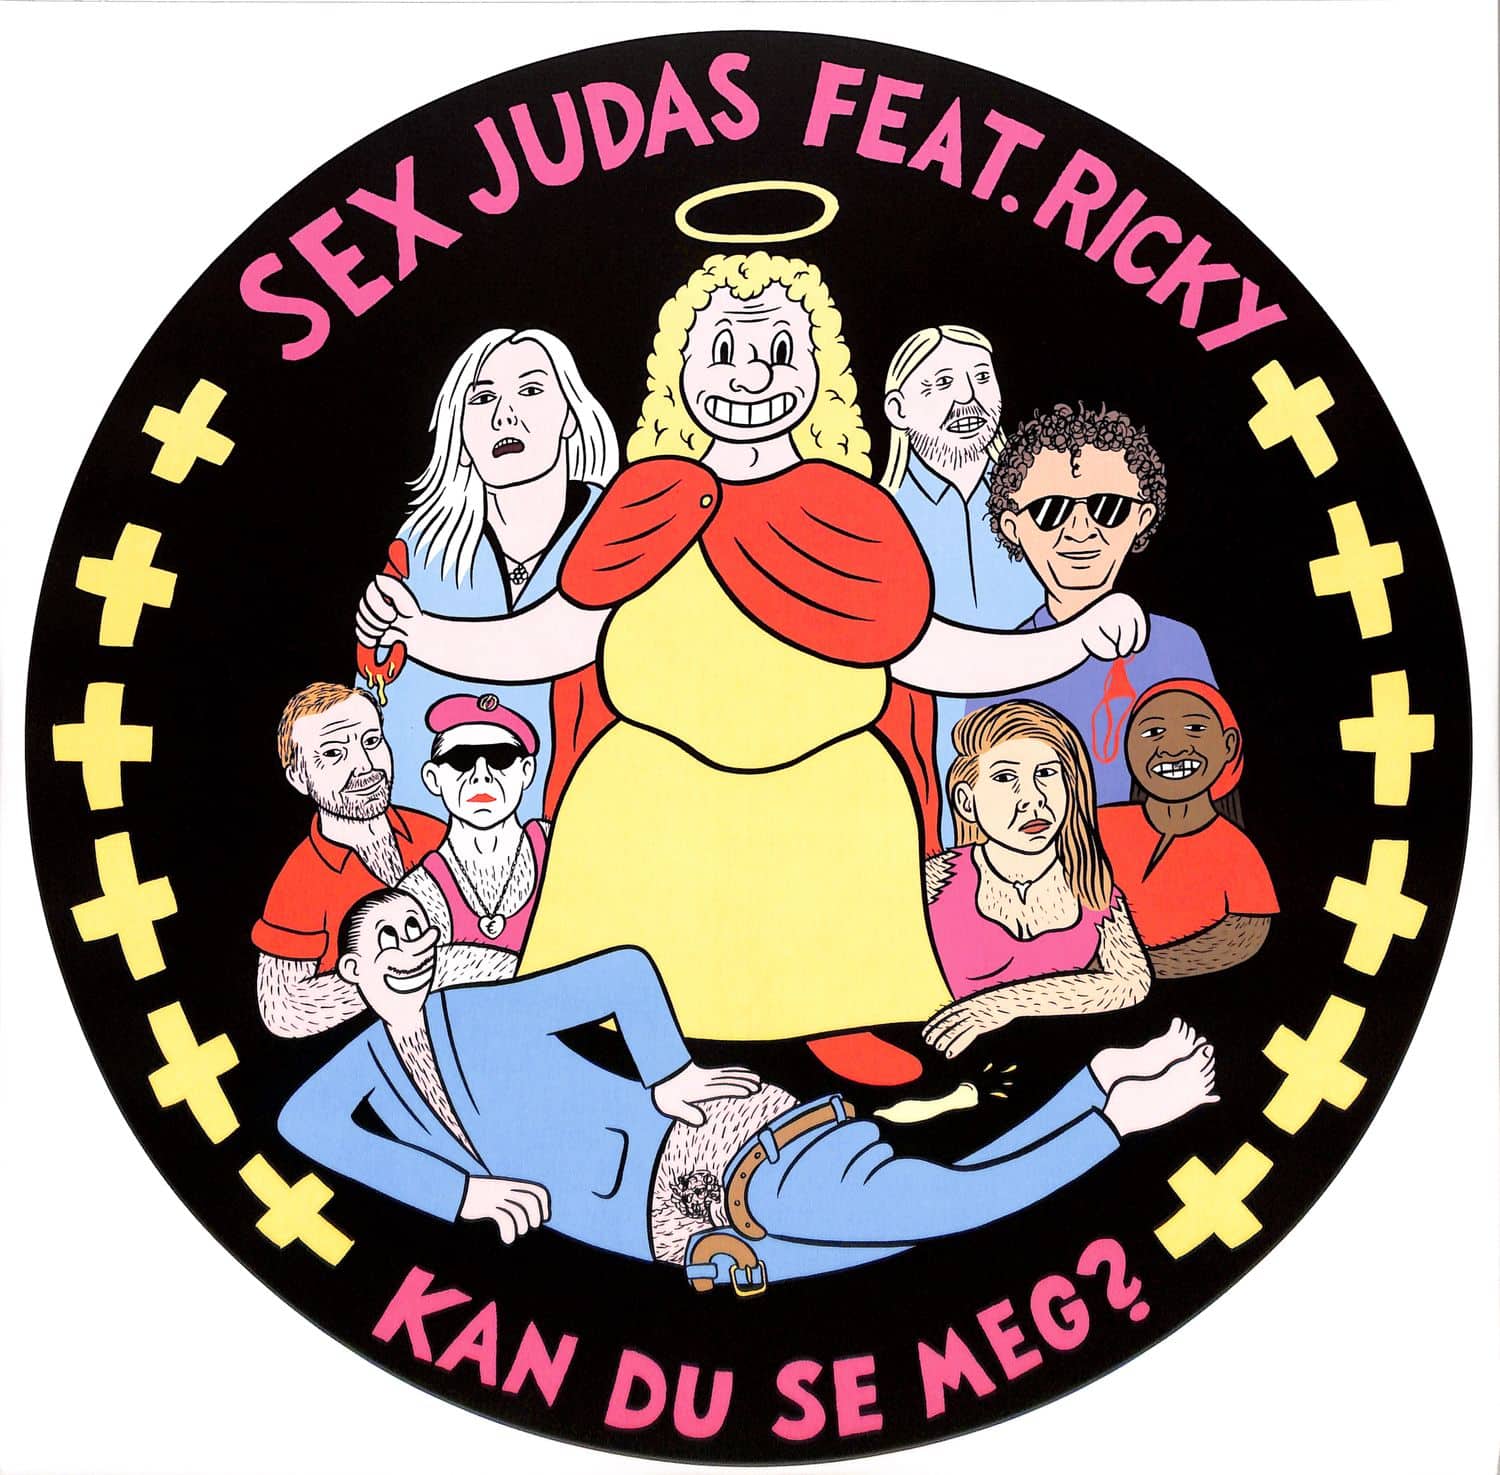 Sex Judas feat. Ricky - KAN DU SE MEG?